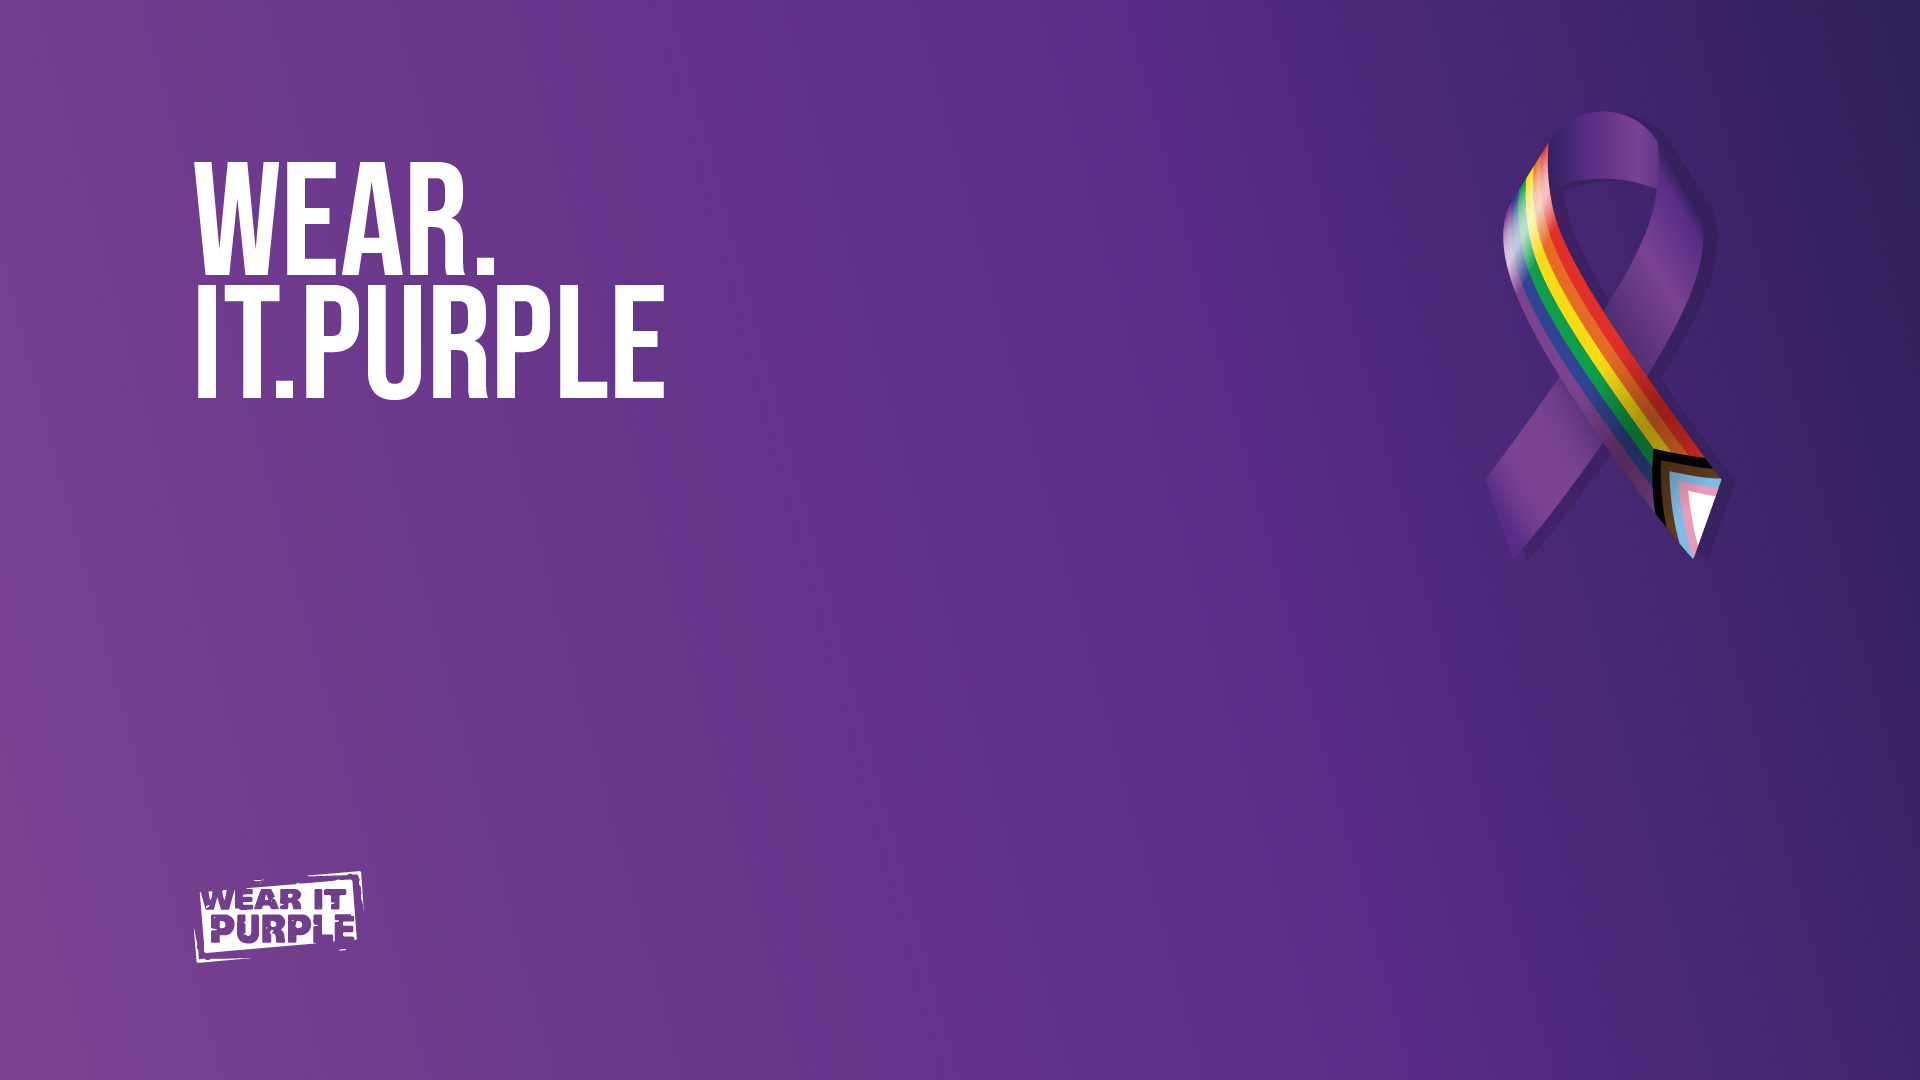 Wear it purple alliance image.